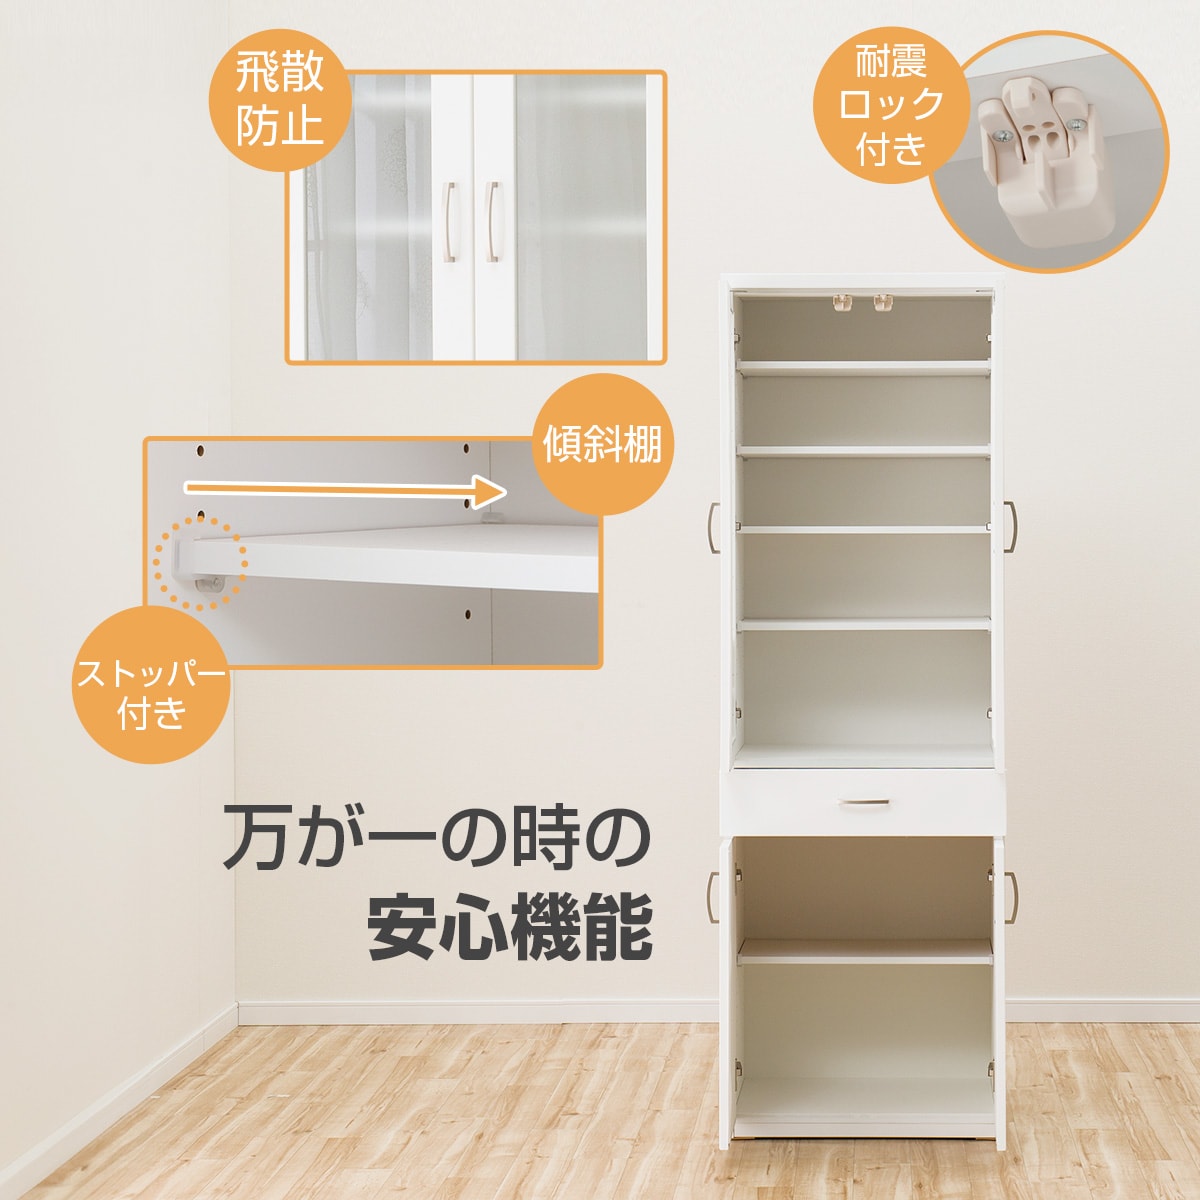 日本からも購入 ニトリ食器棚(コパンT80KB)送料込み | artfive.co.jp